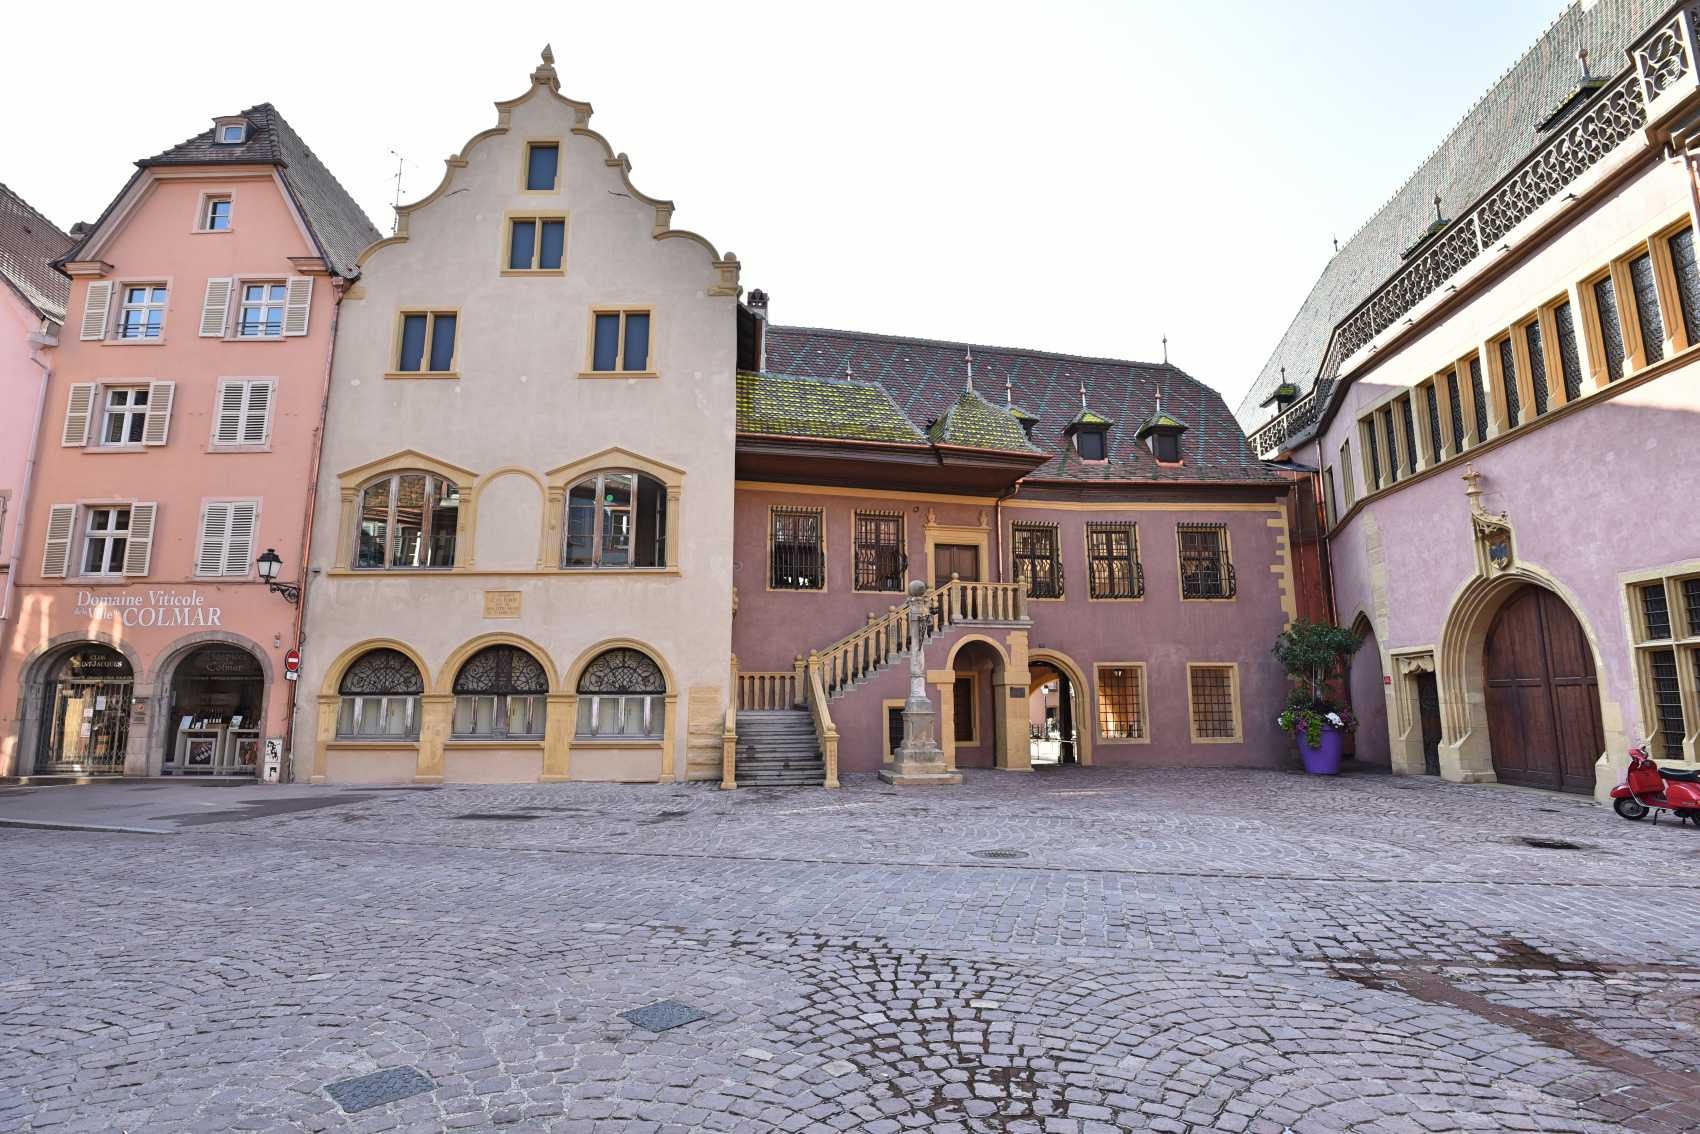 Le 2eme bâtiment à gauche dit Ankenhaus date du XVI siècle...